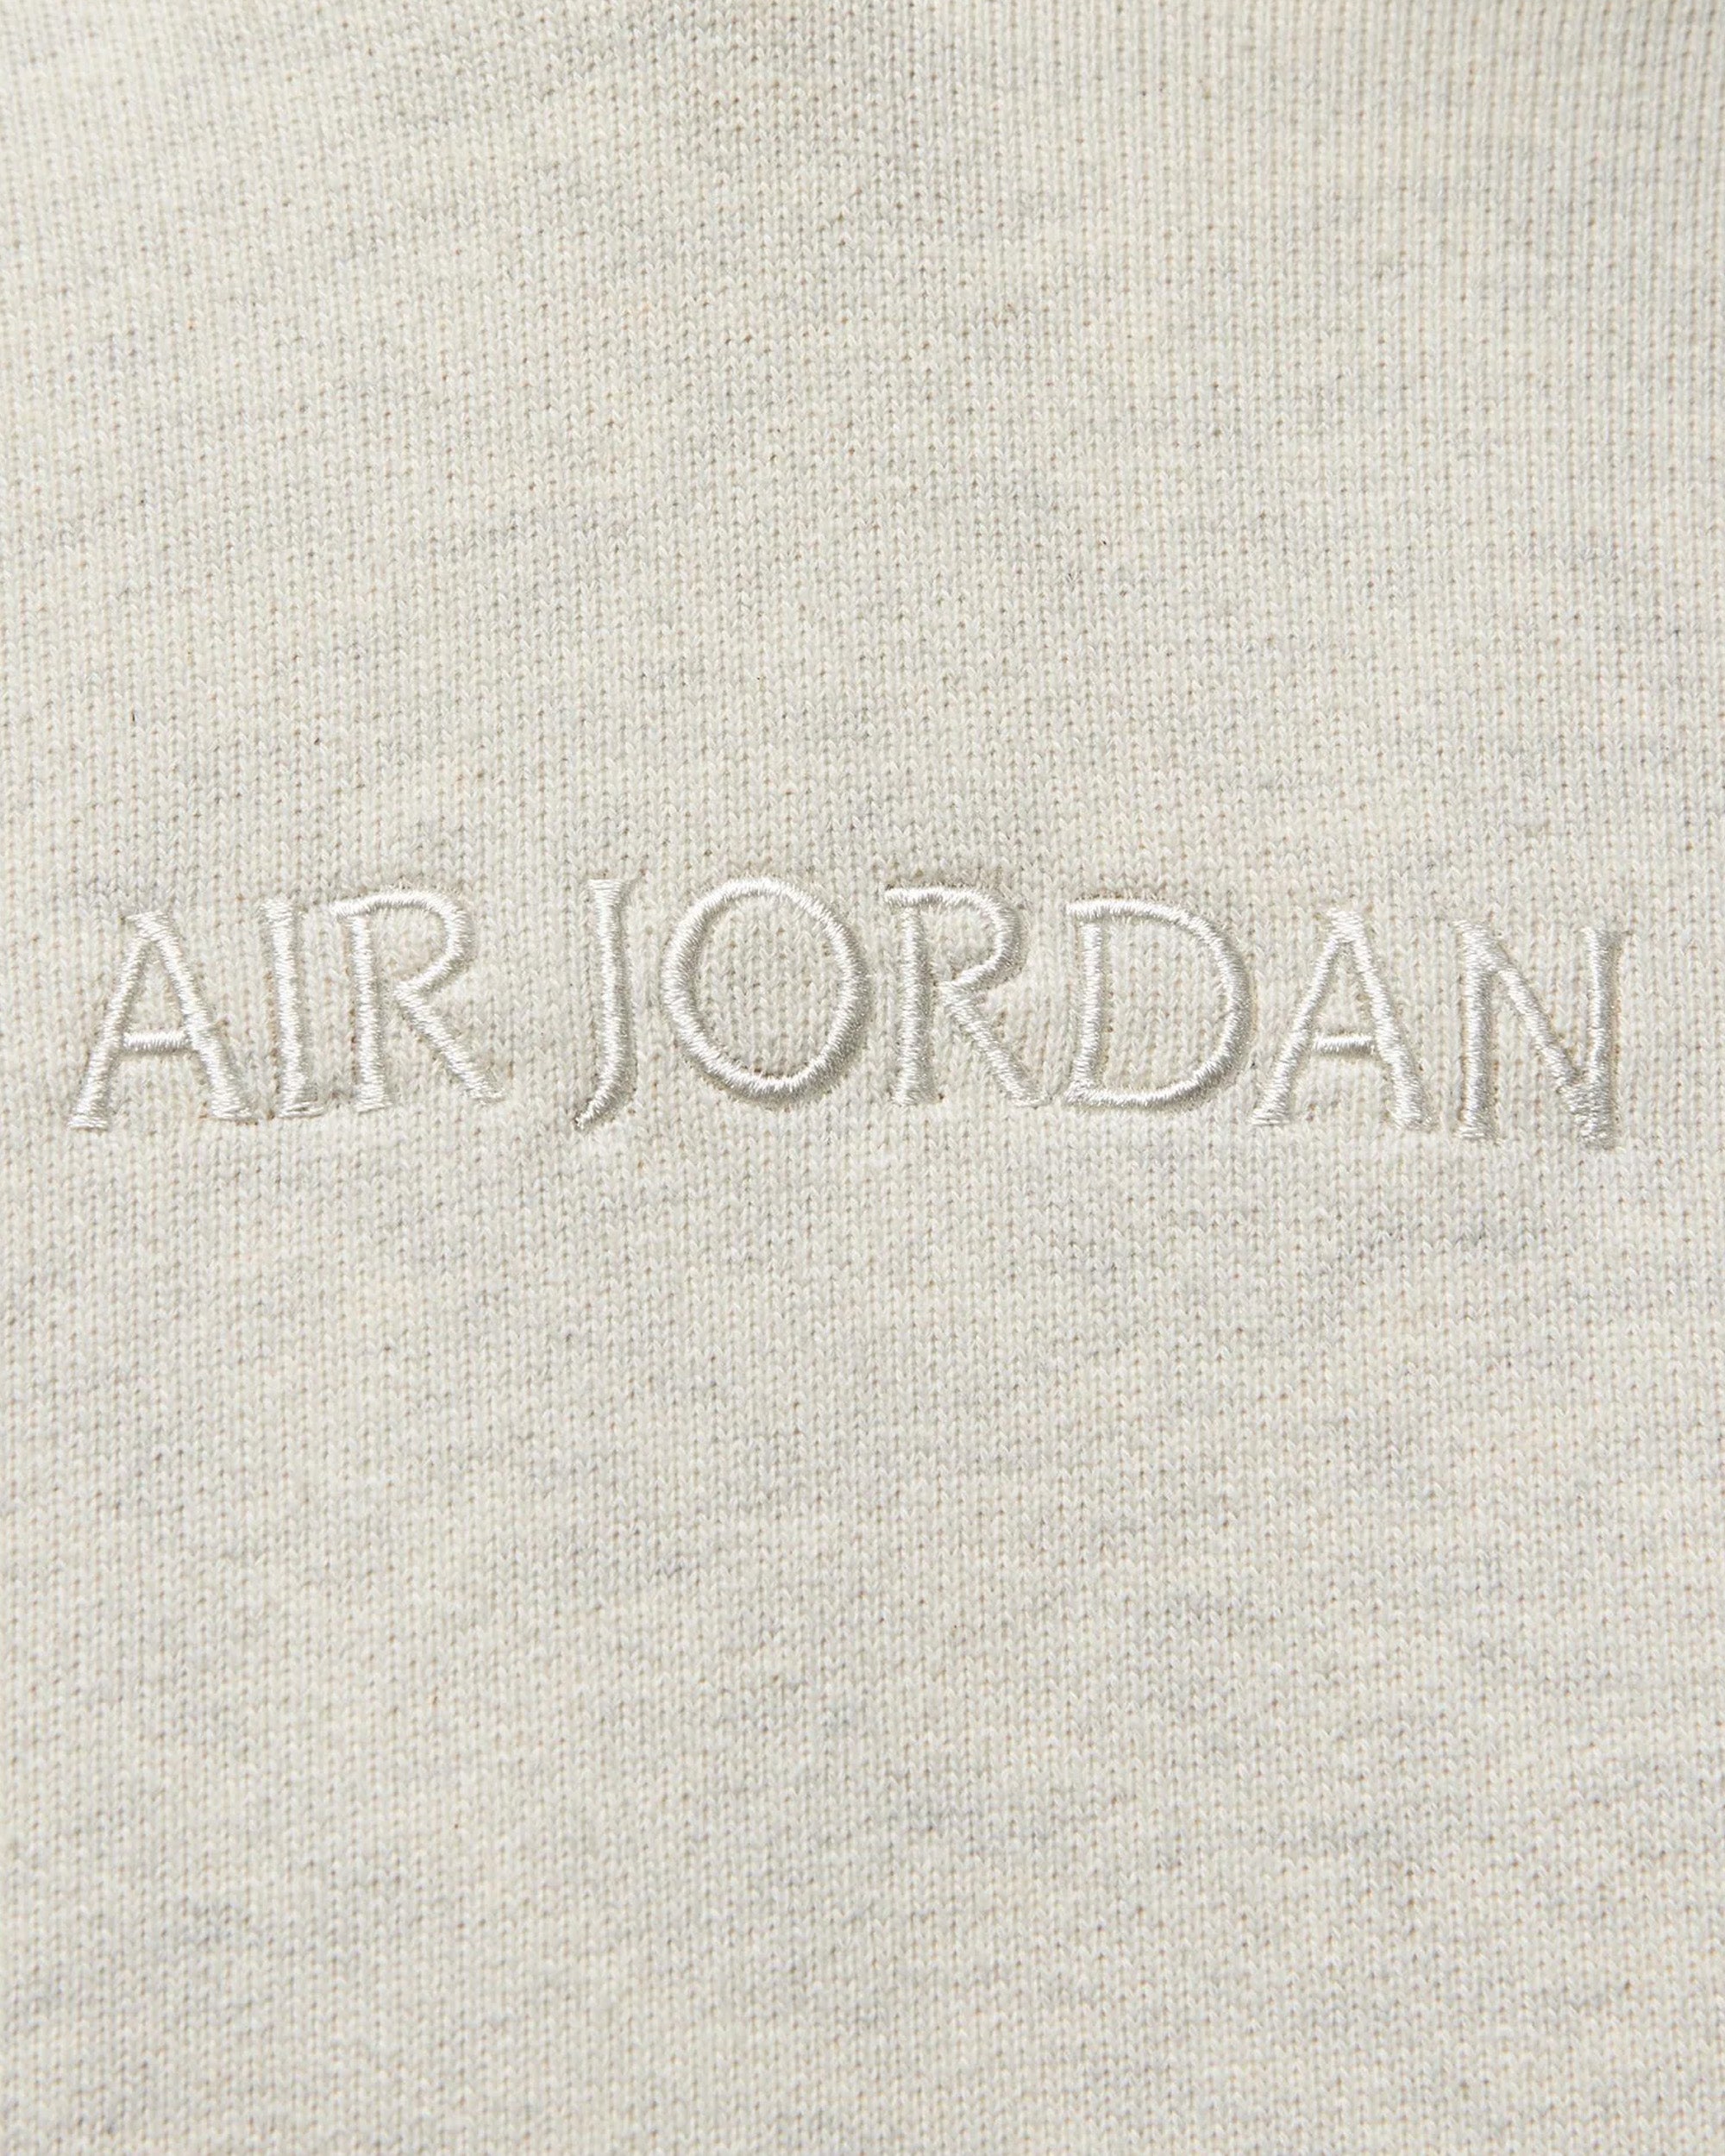 Jordan Brand Air Jordan T-shirt OATMEAL HEATHER FJ1969-141